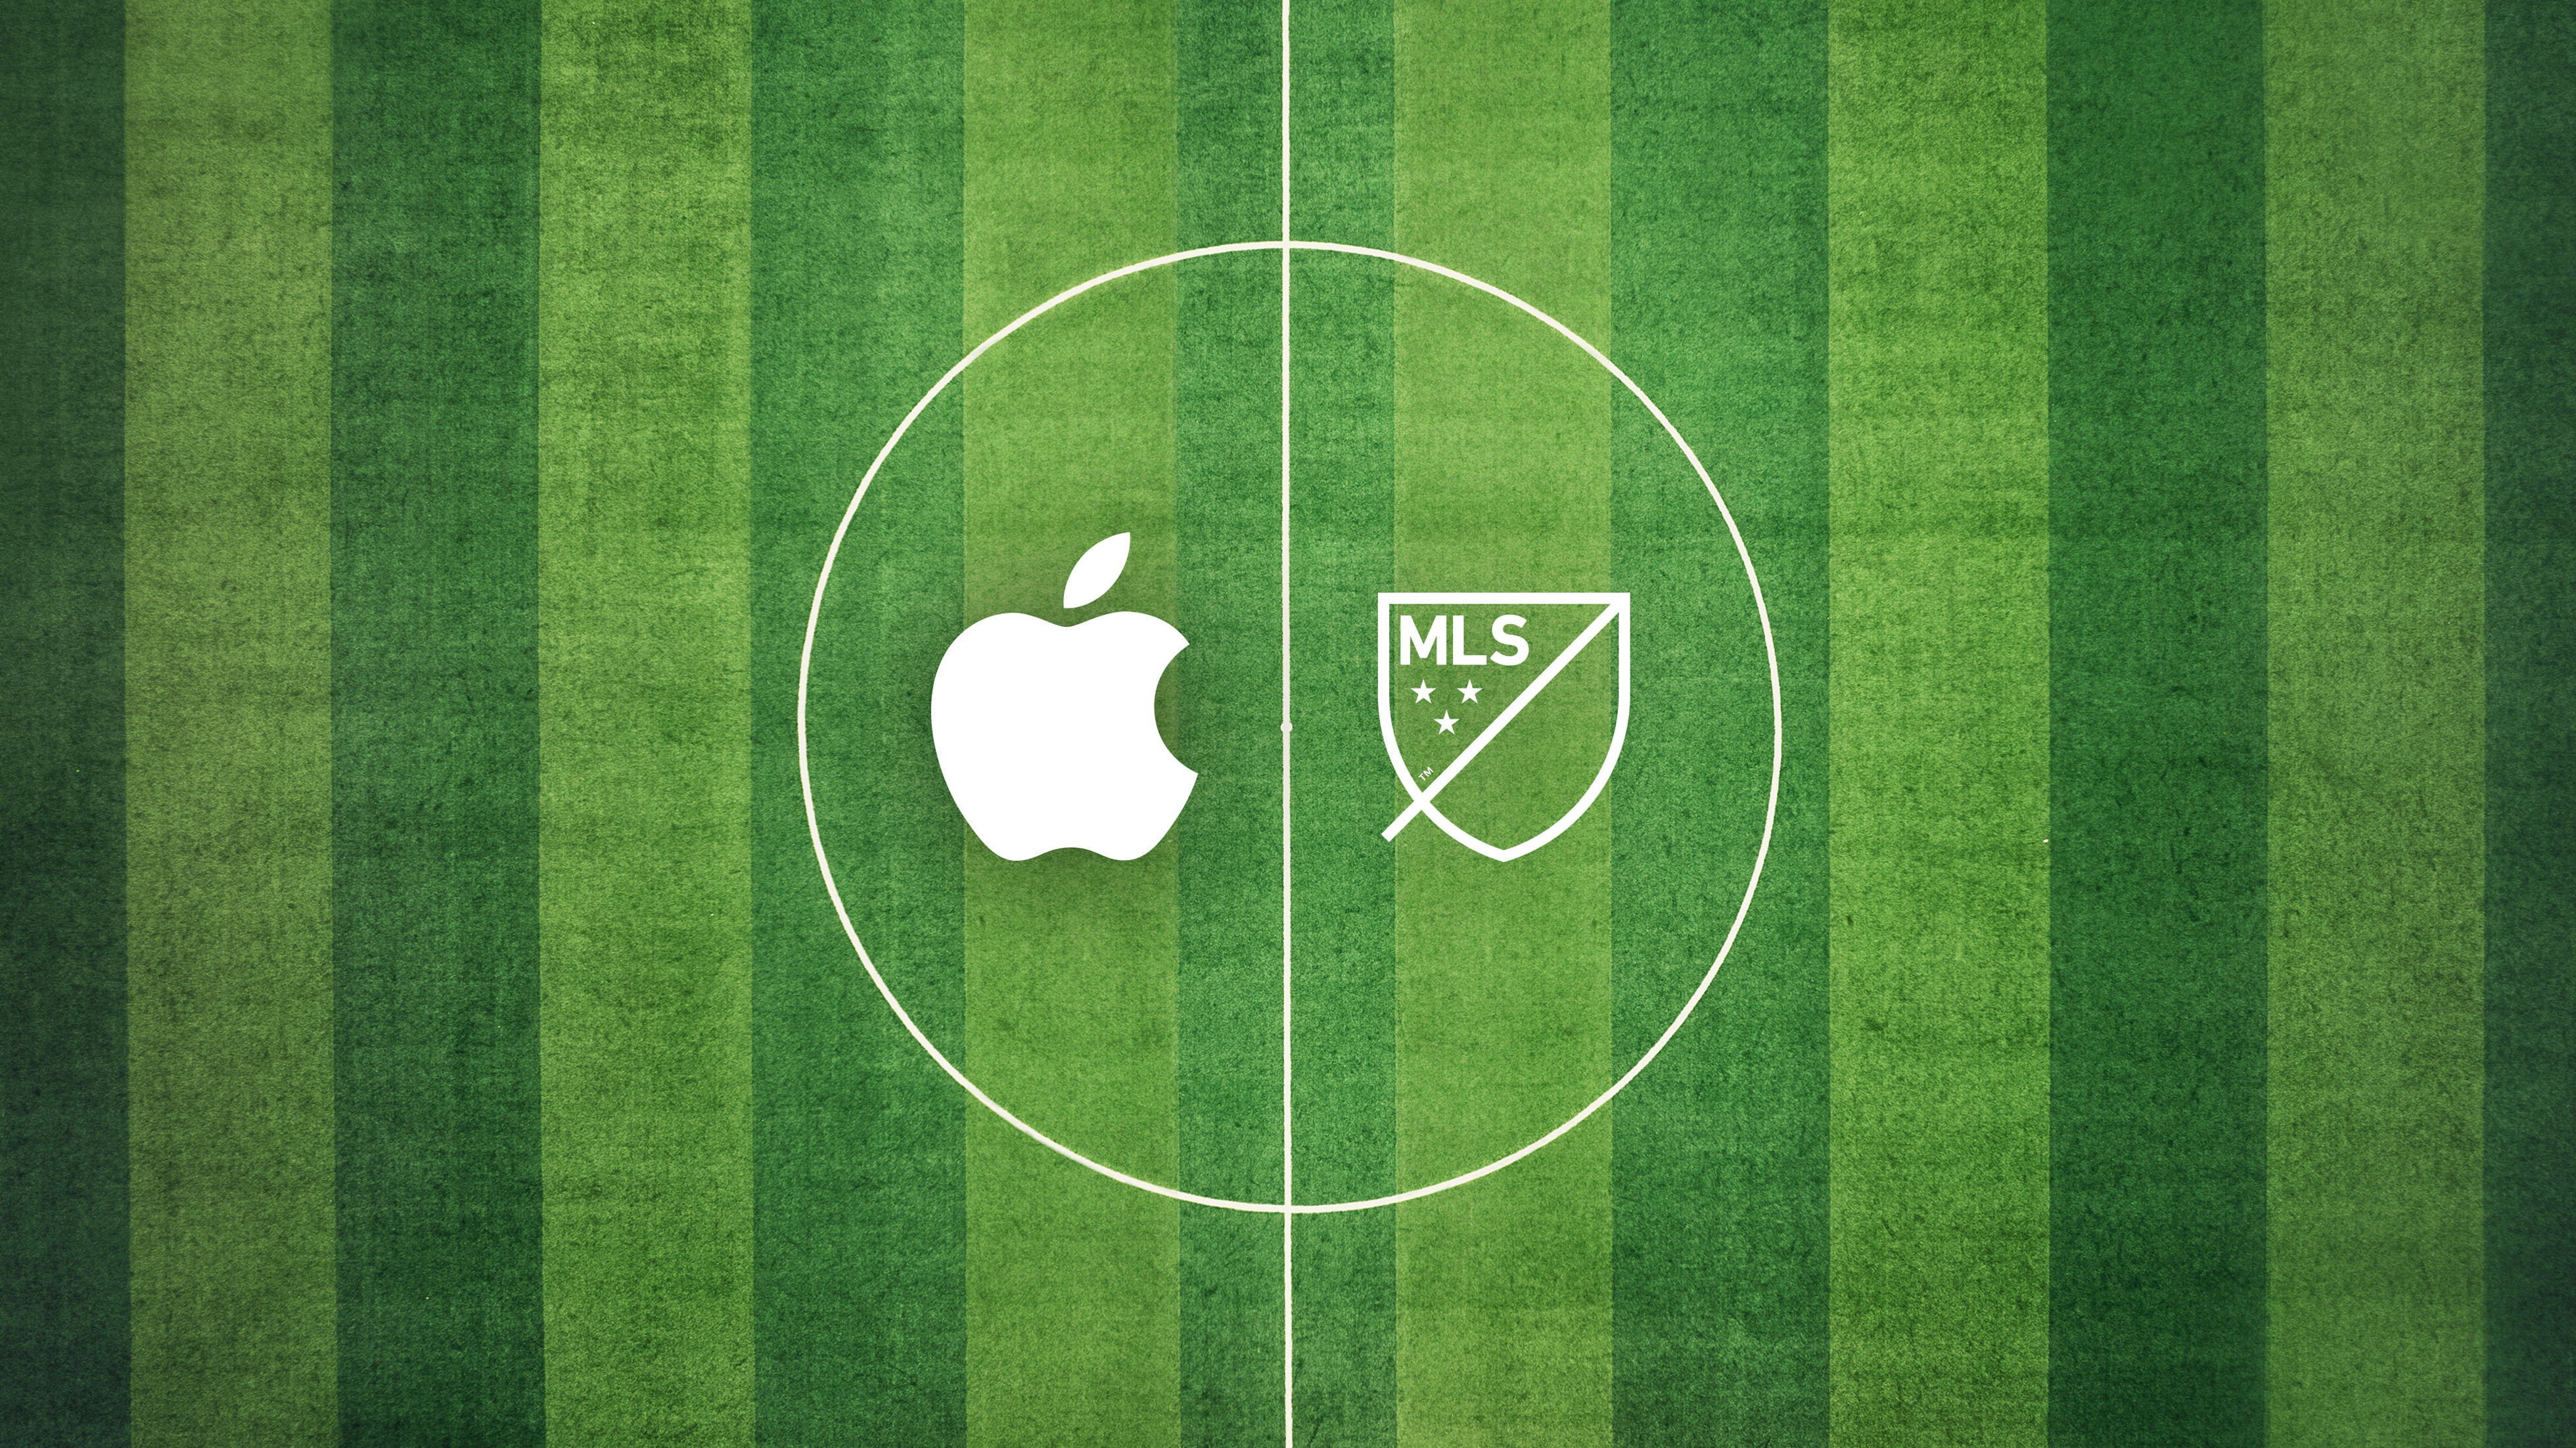 Top 10 Melhores Apps para Assistir Futebol ao Vivo em 2023 (Star+